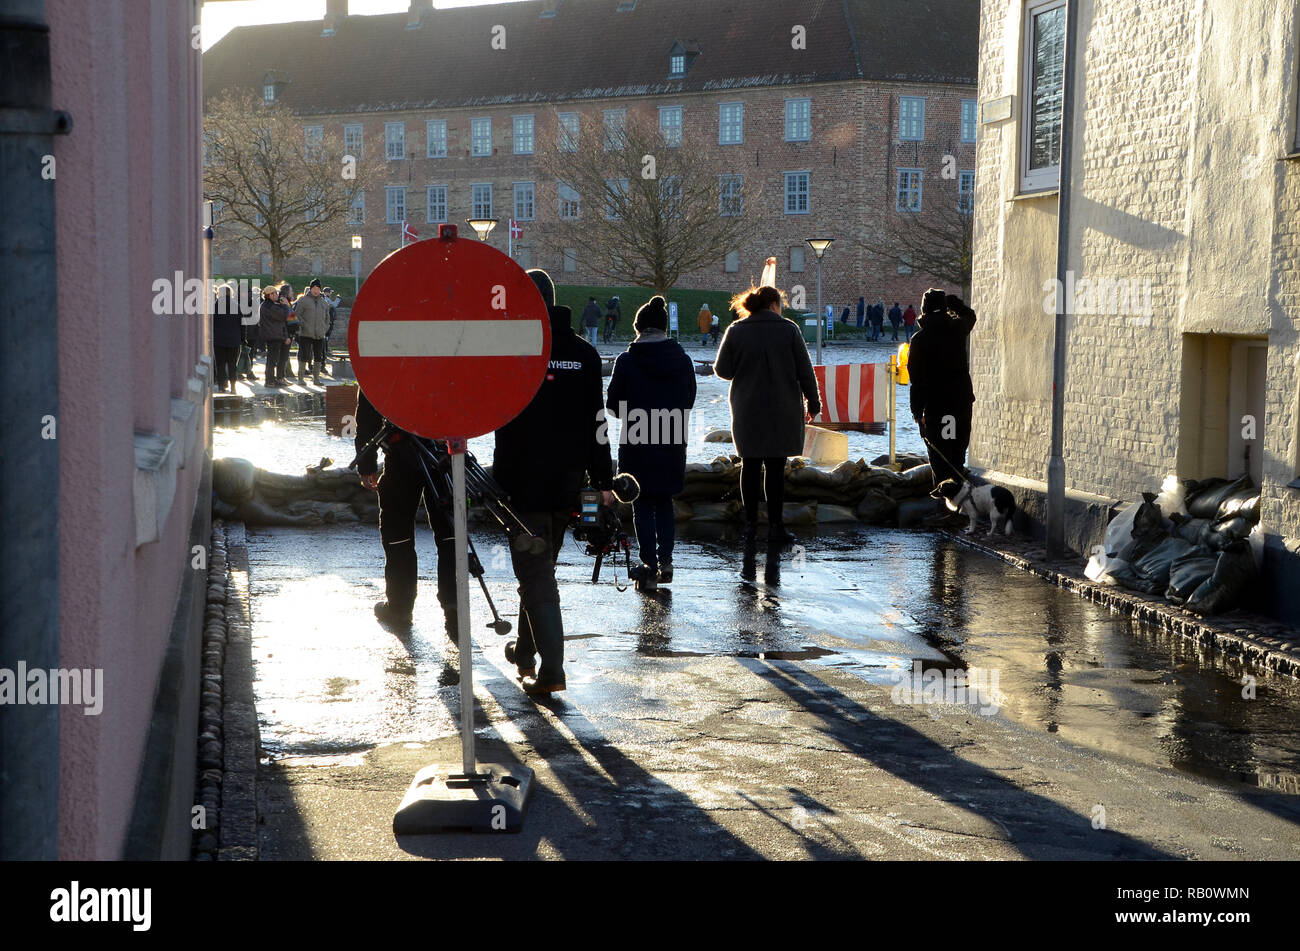 Sonderborg, Danemark - 2 janvier 2019 : Une rue a été bloquée avec des sacs en raison d'une onde de tempête. Les gens se tenir derrière les sacs de sable en regardant les flo Banque D'Images